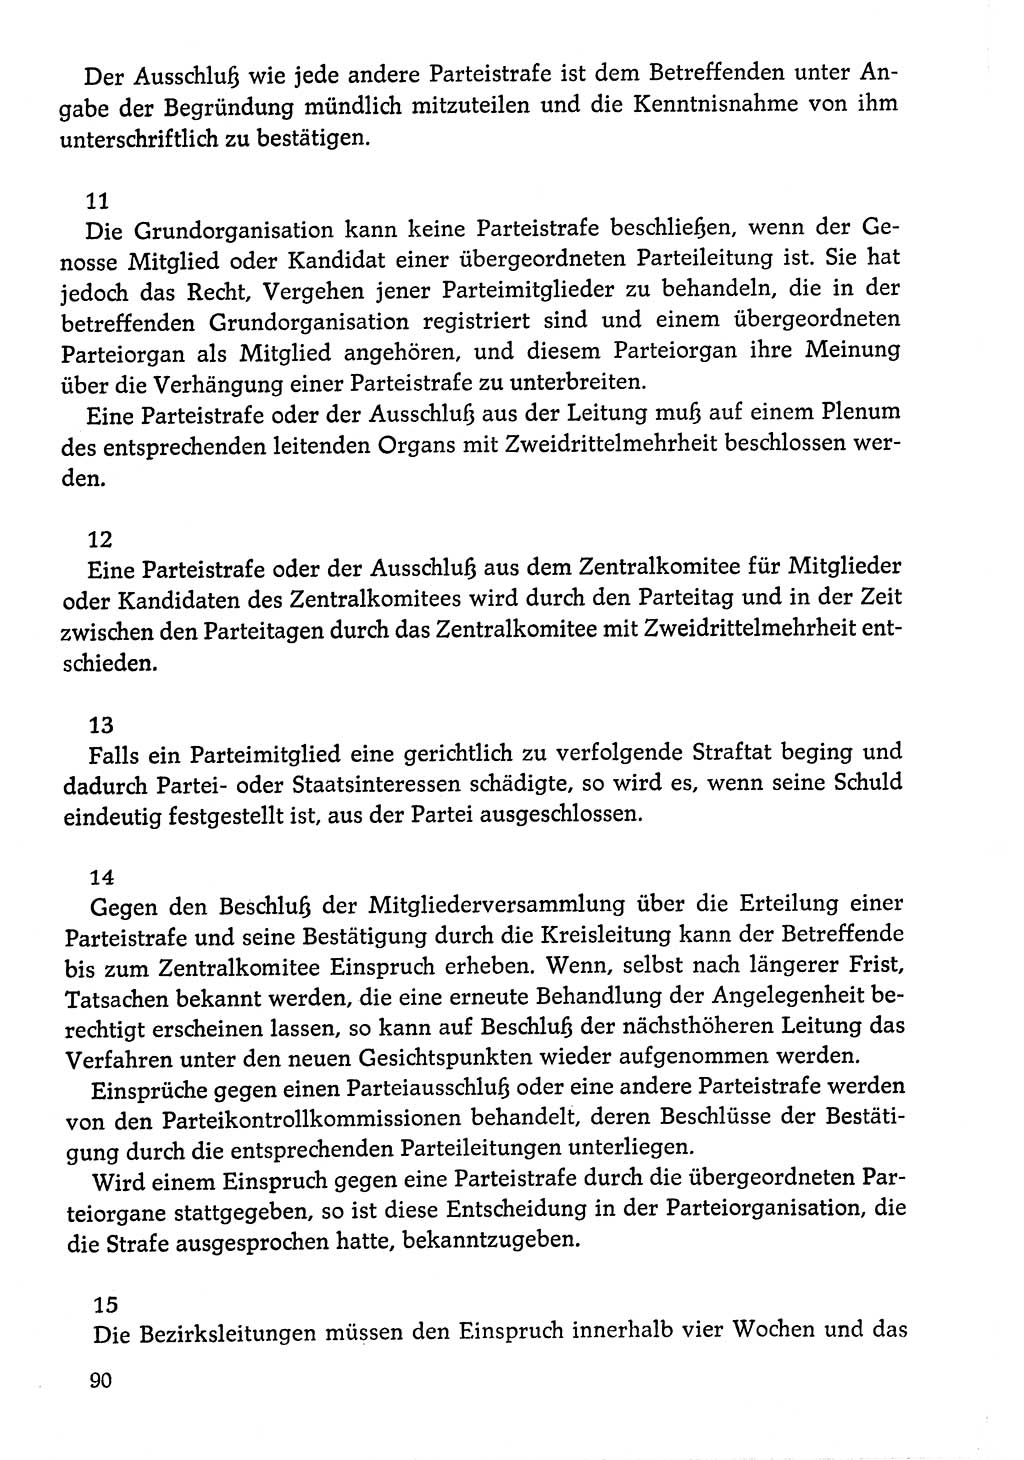 Dokumente der Sozialistischen Einheitspartei Deutschlands (SED) [Deutsche Demokratische Republik (DDR)] 1976-1977, Seite 90 (Dok. SED DDR 1976-1977, S. 90)